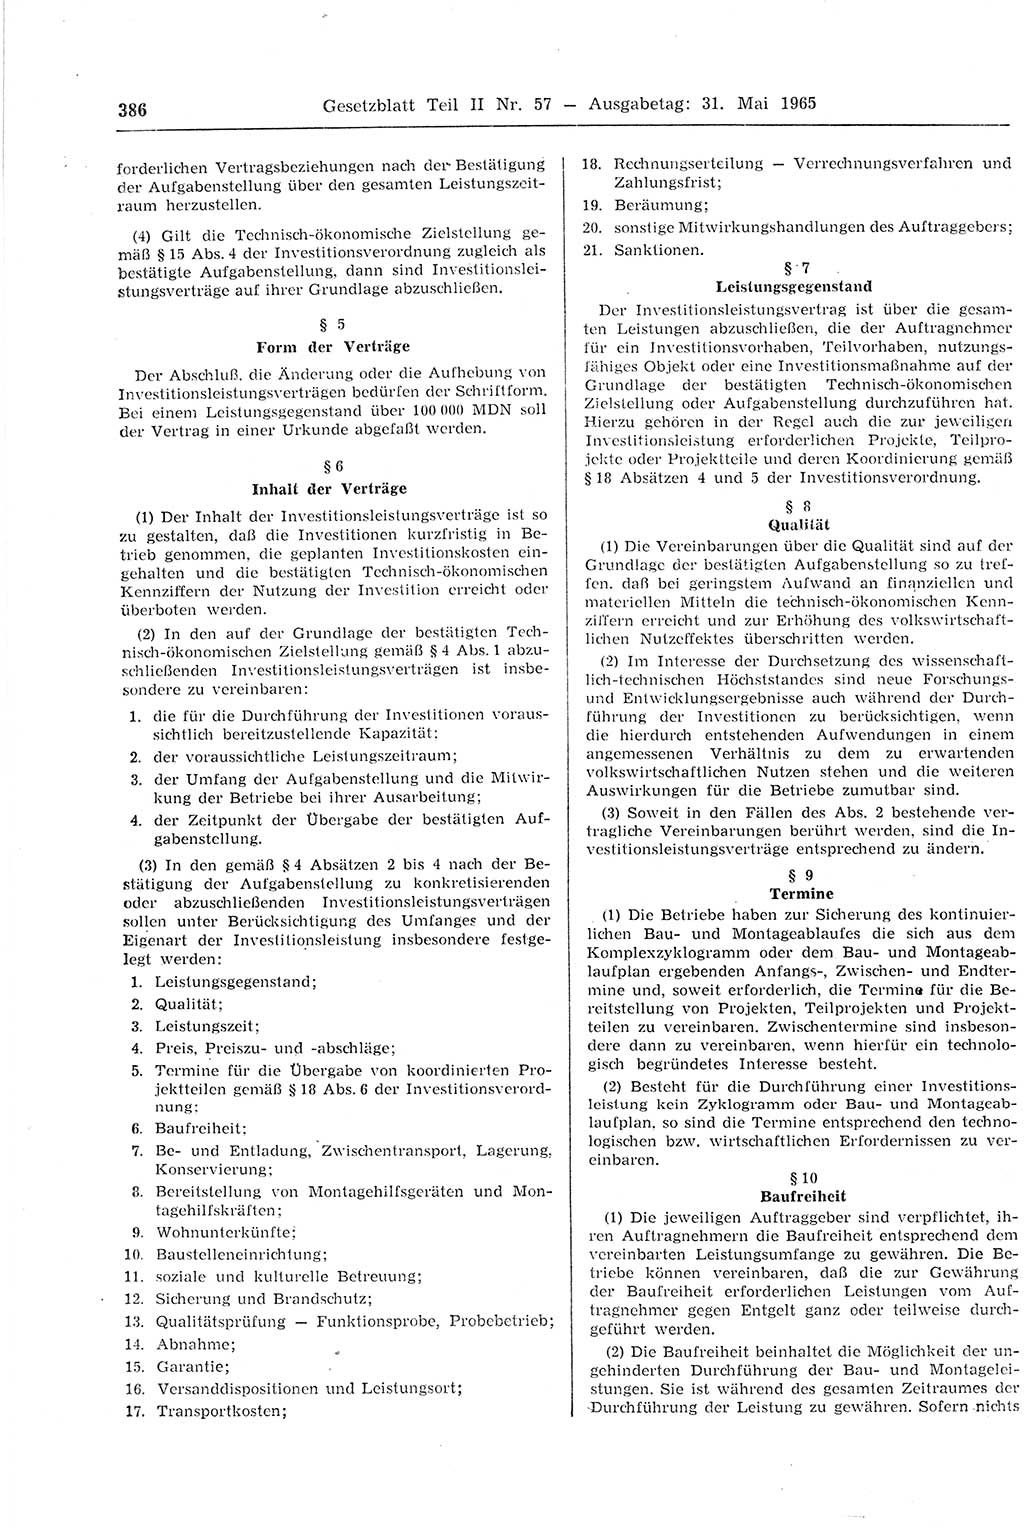 Gesetzblatt (GBl.) der Deutschen Demokratischen Republik (DDR) Teil ⅠⅠ 1965, Seite 386 (GBl. DDR ⅠⅠ 1965, S. 386)